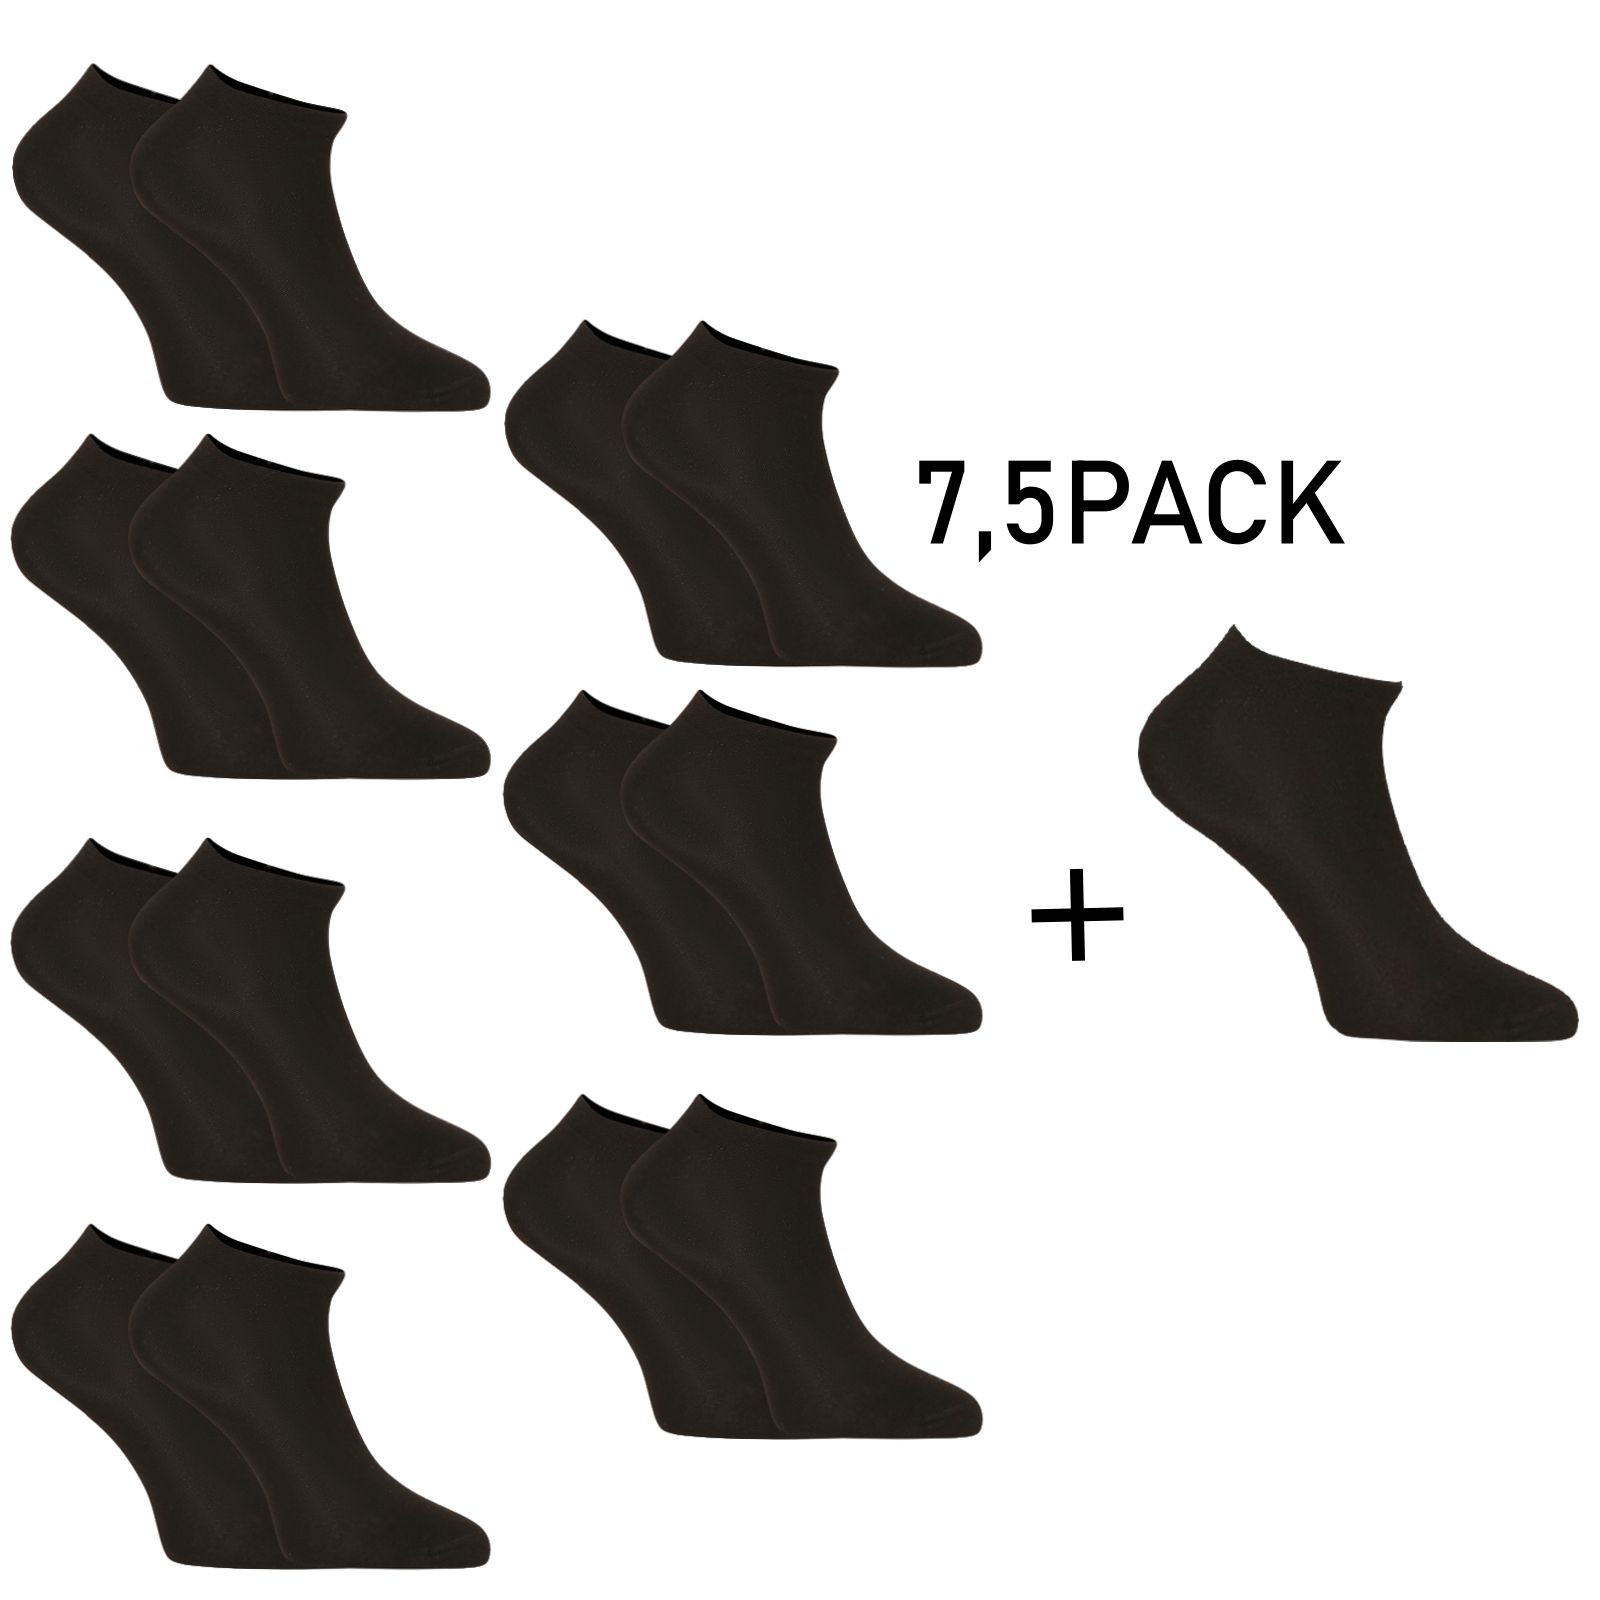 E-shop 7,5PACK ponožky Nedeto nízké bambusové černé